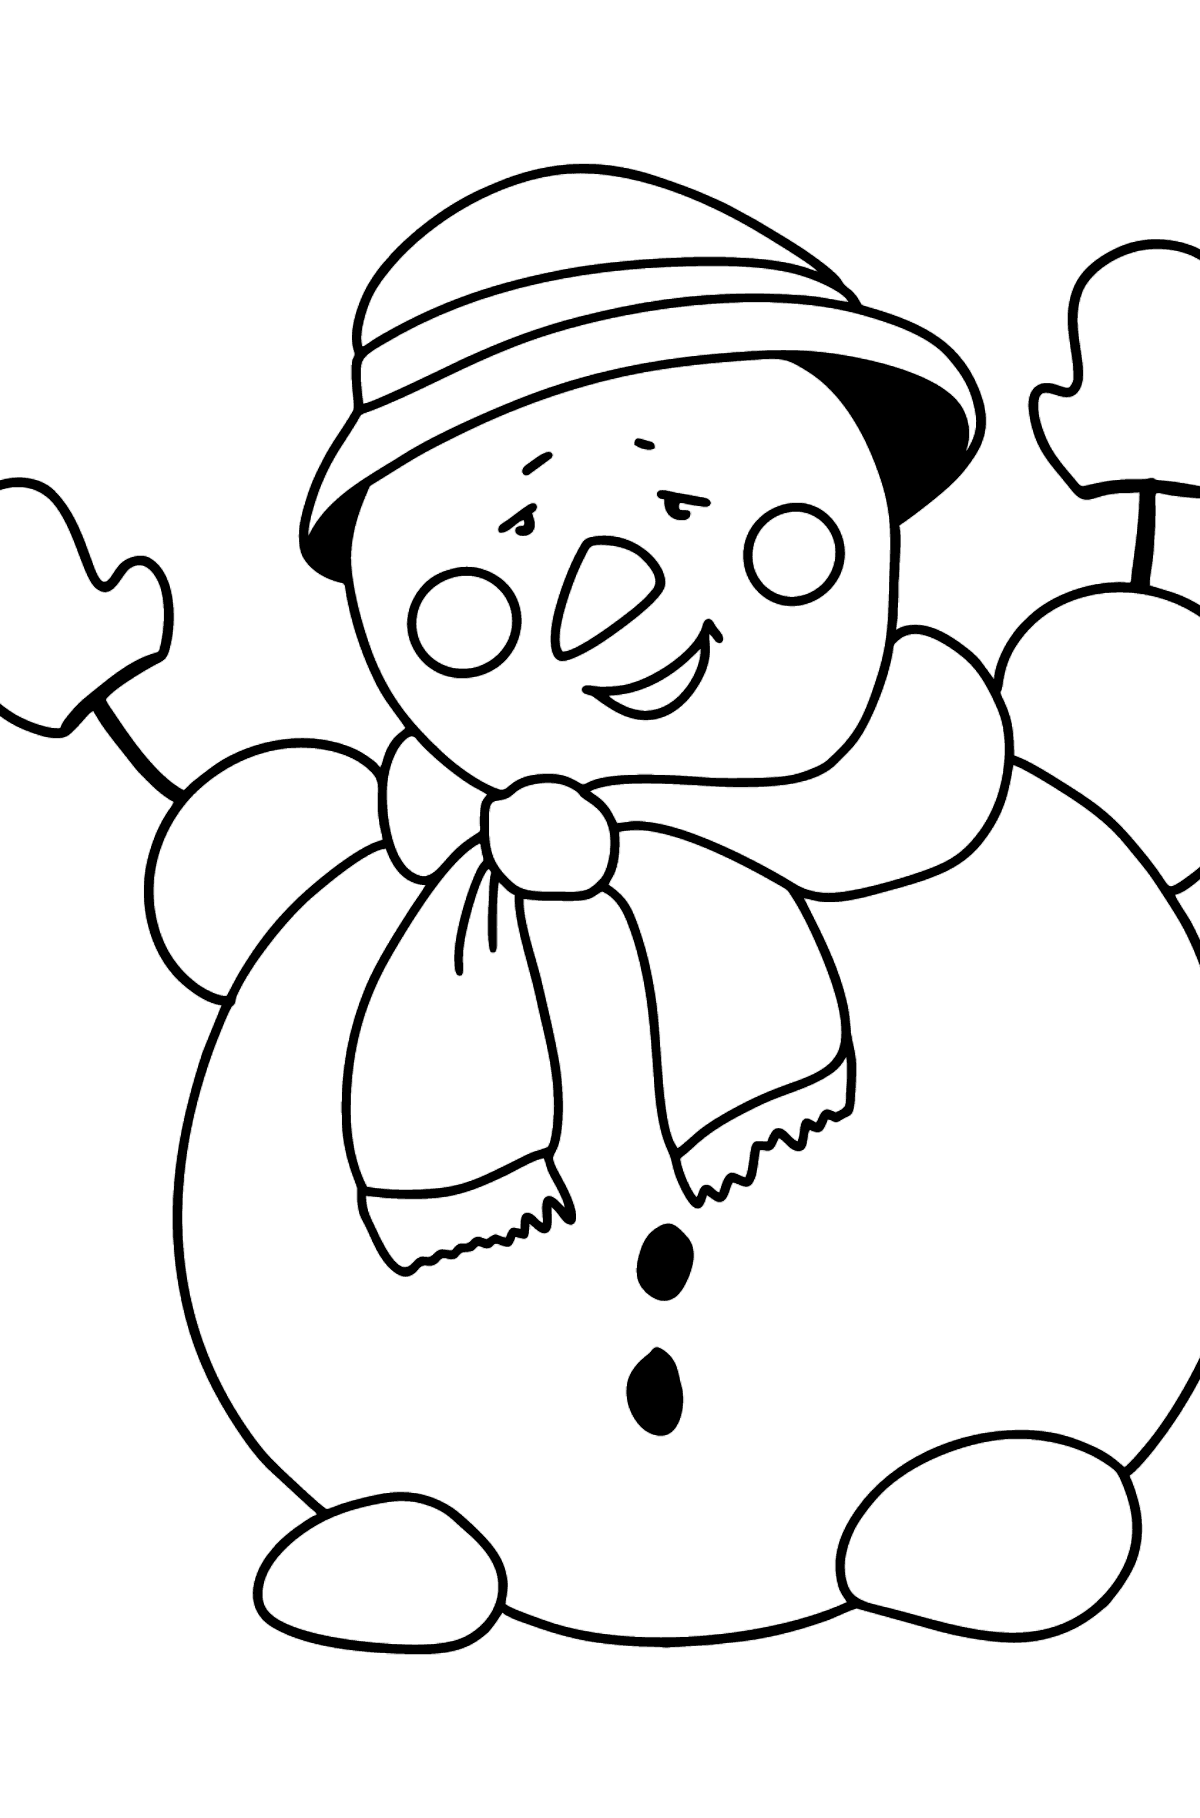 Desenho para colorir do boneco de neve feliz - Imagens para Colorir para Crianças